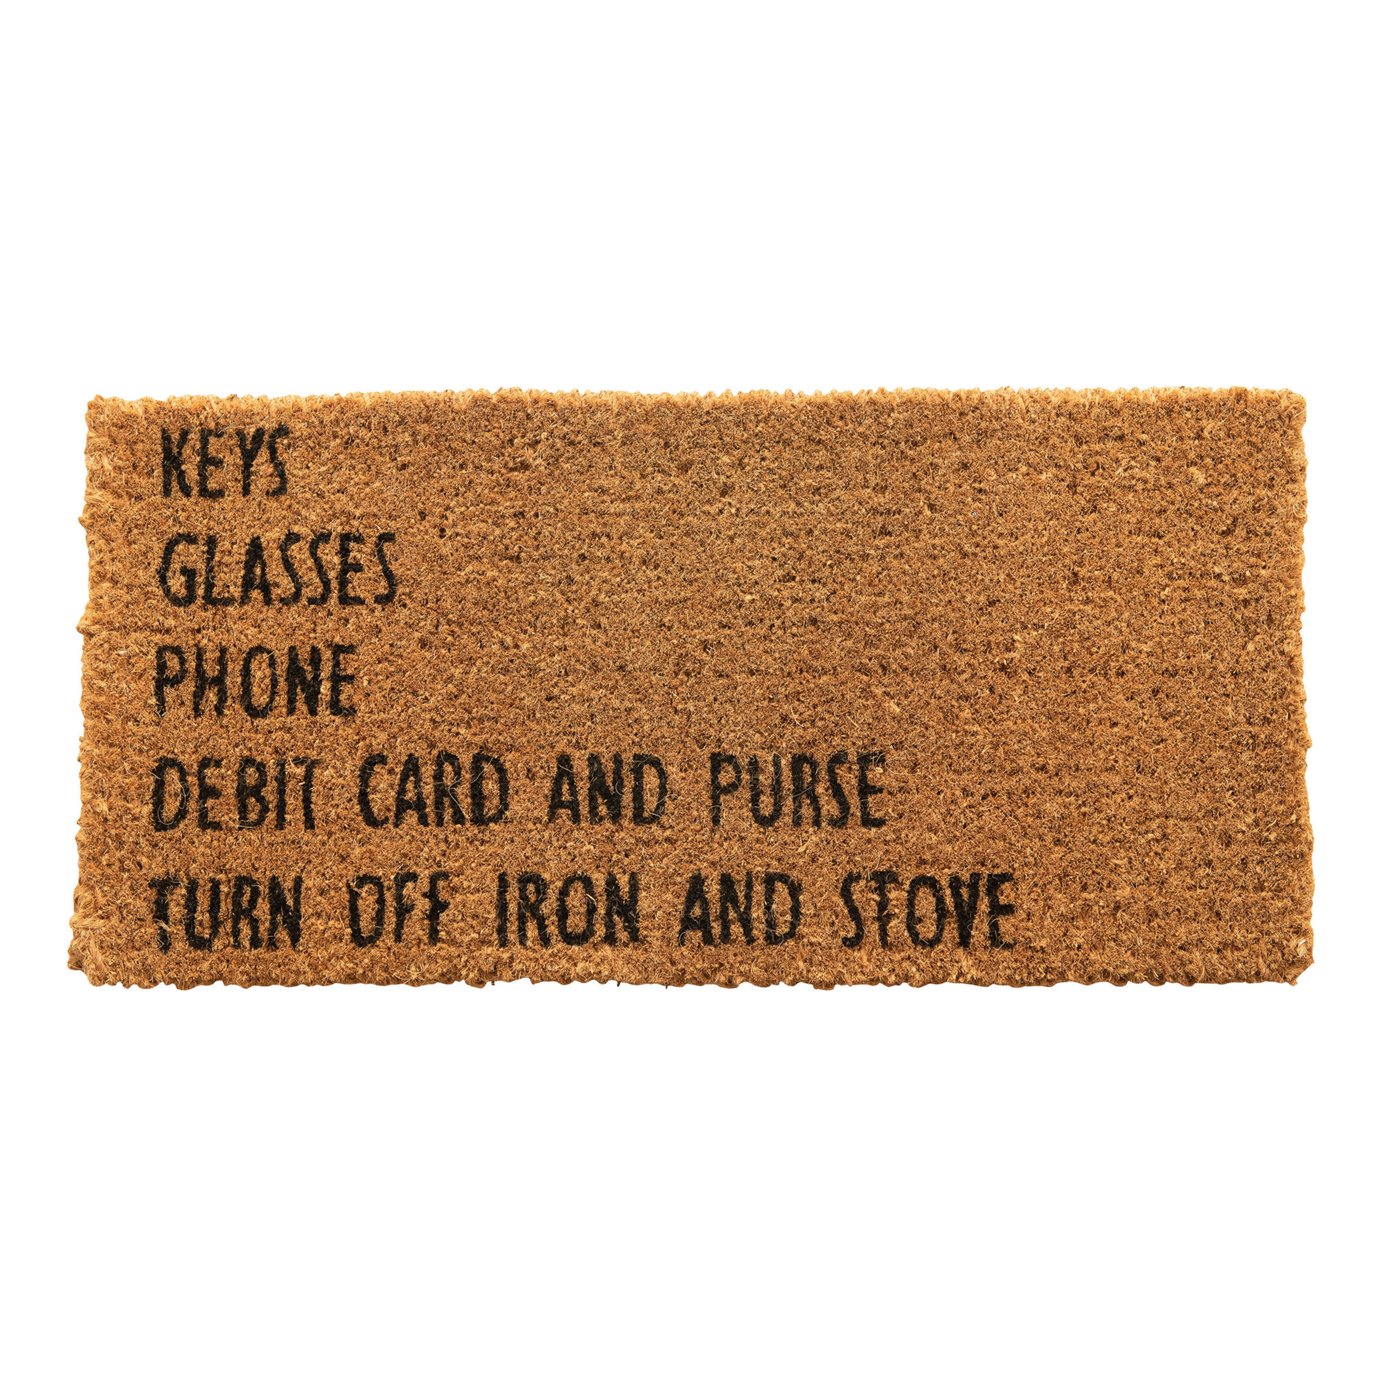 Natural Coir Doormat "Keys, Glasses, Phone…"